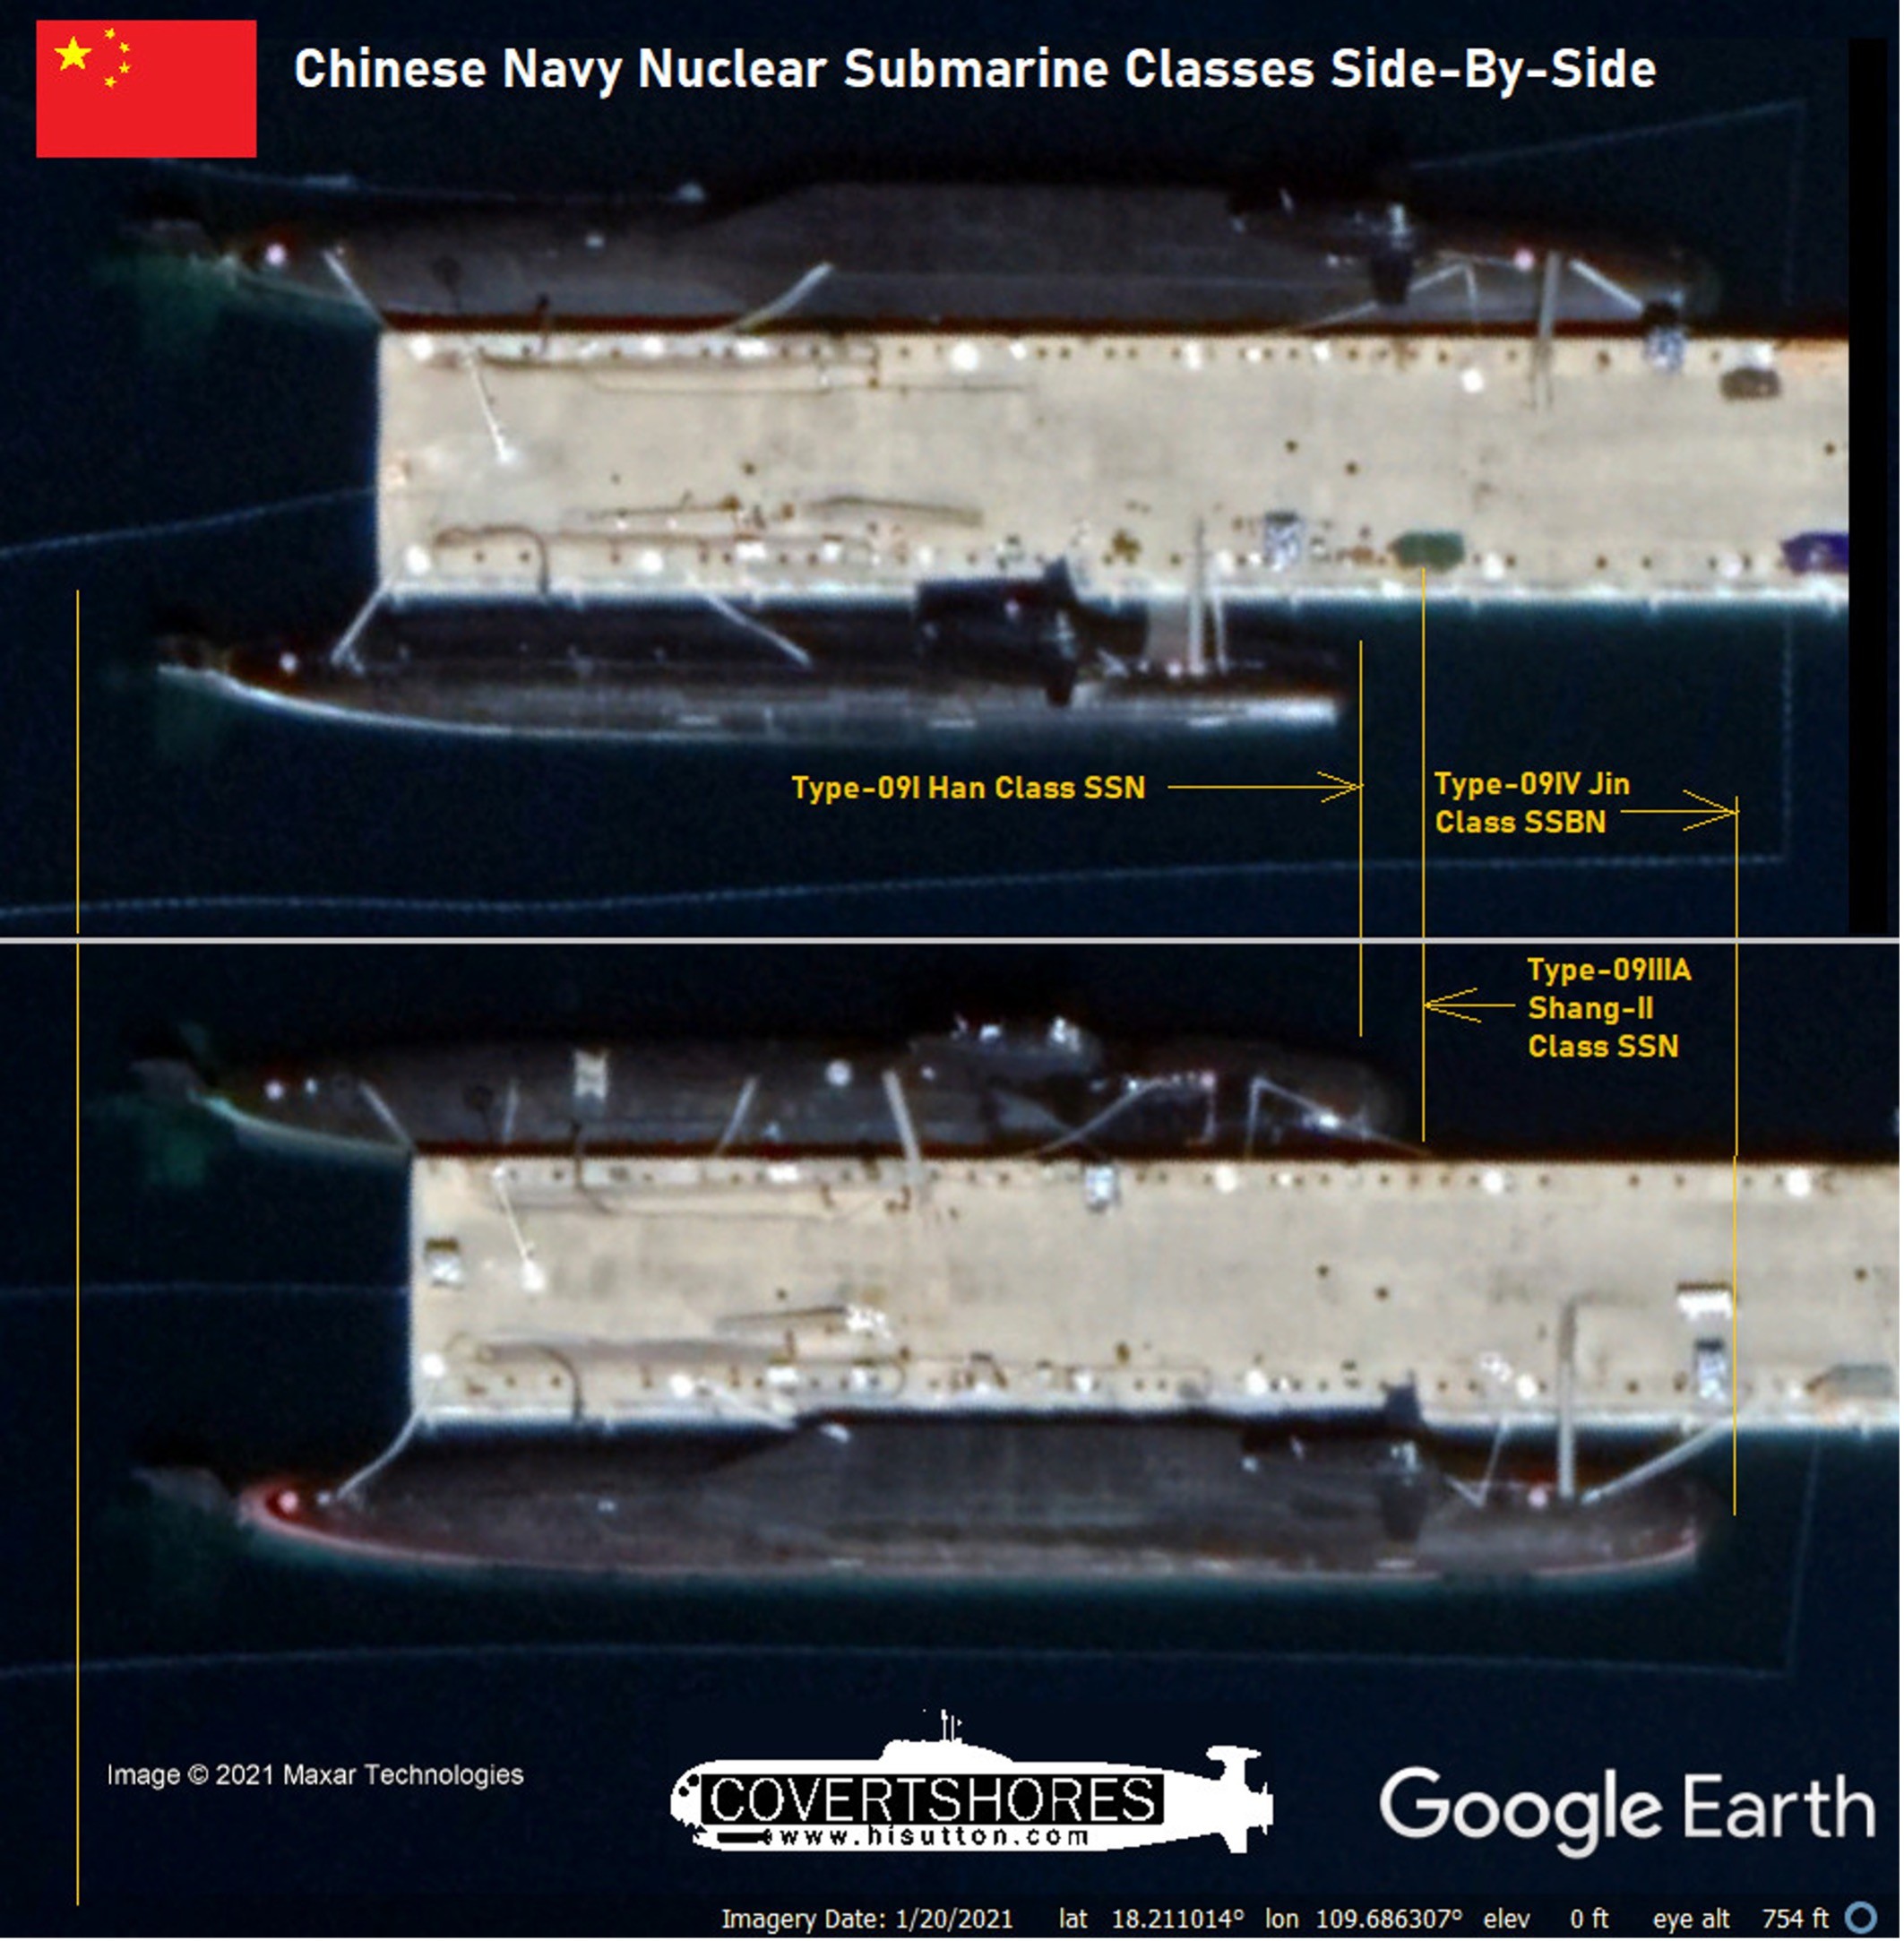 核潛艦,衛星圖像,南海戰略態勢感知,P-8A,台灣海峽,潛艦,嚇阻,戰略型彈道飛彈潛艦,海南島,三亞基地